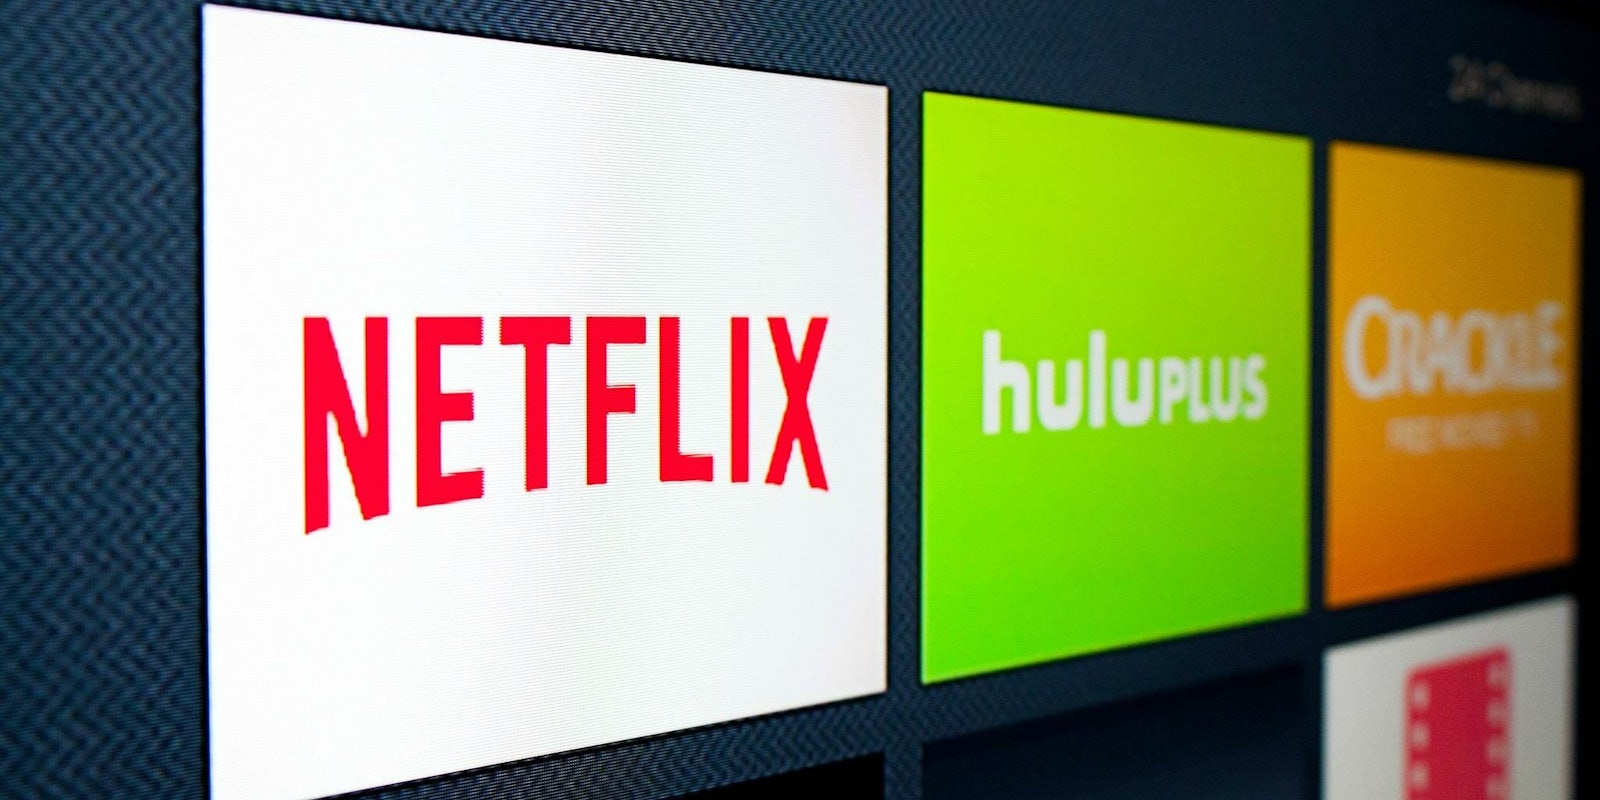 Hulu or Netflix